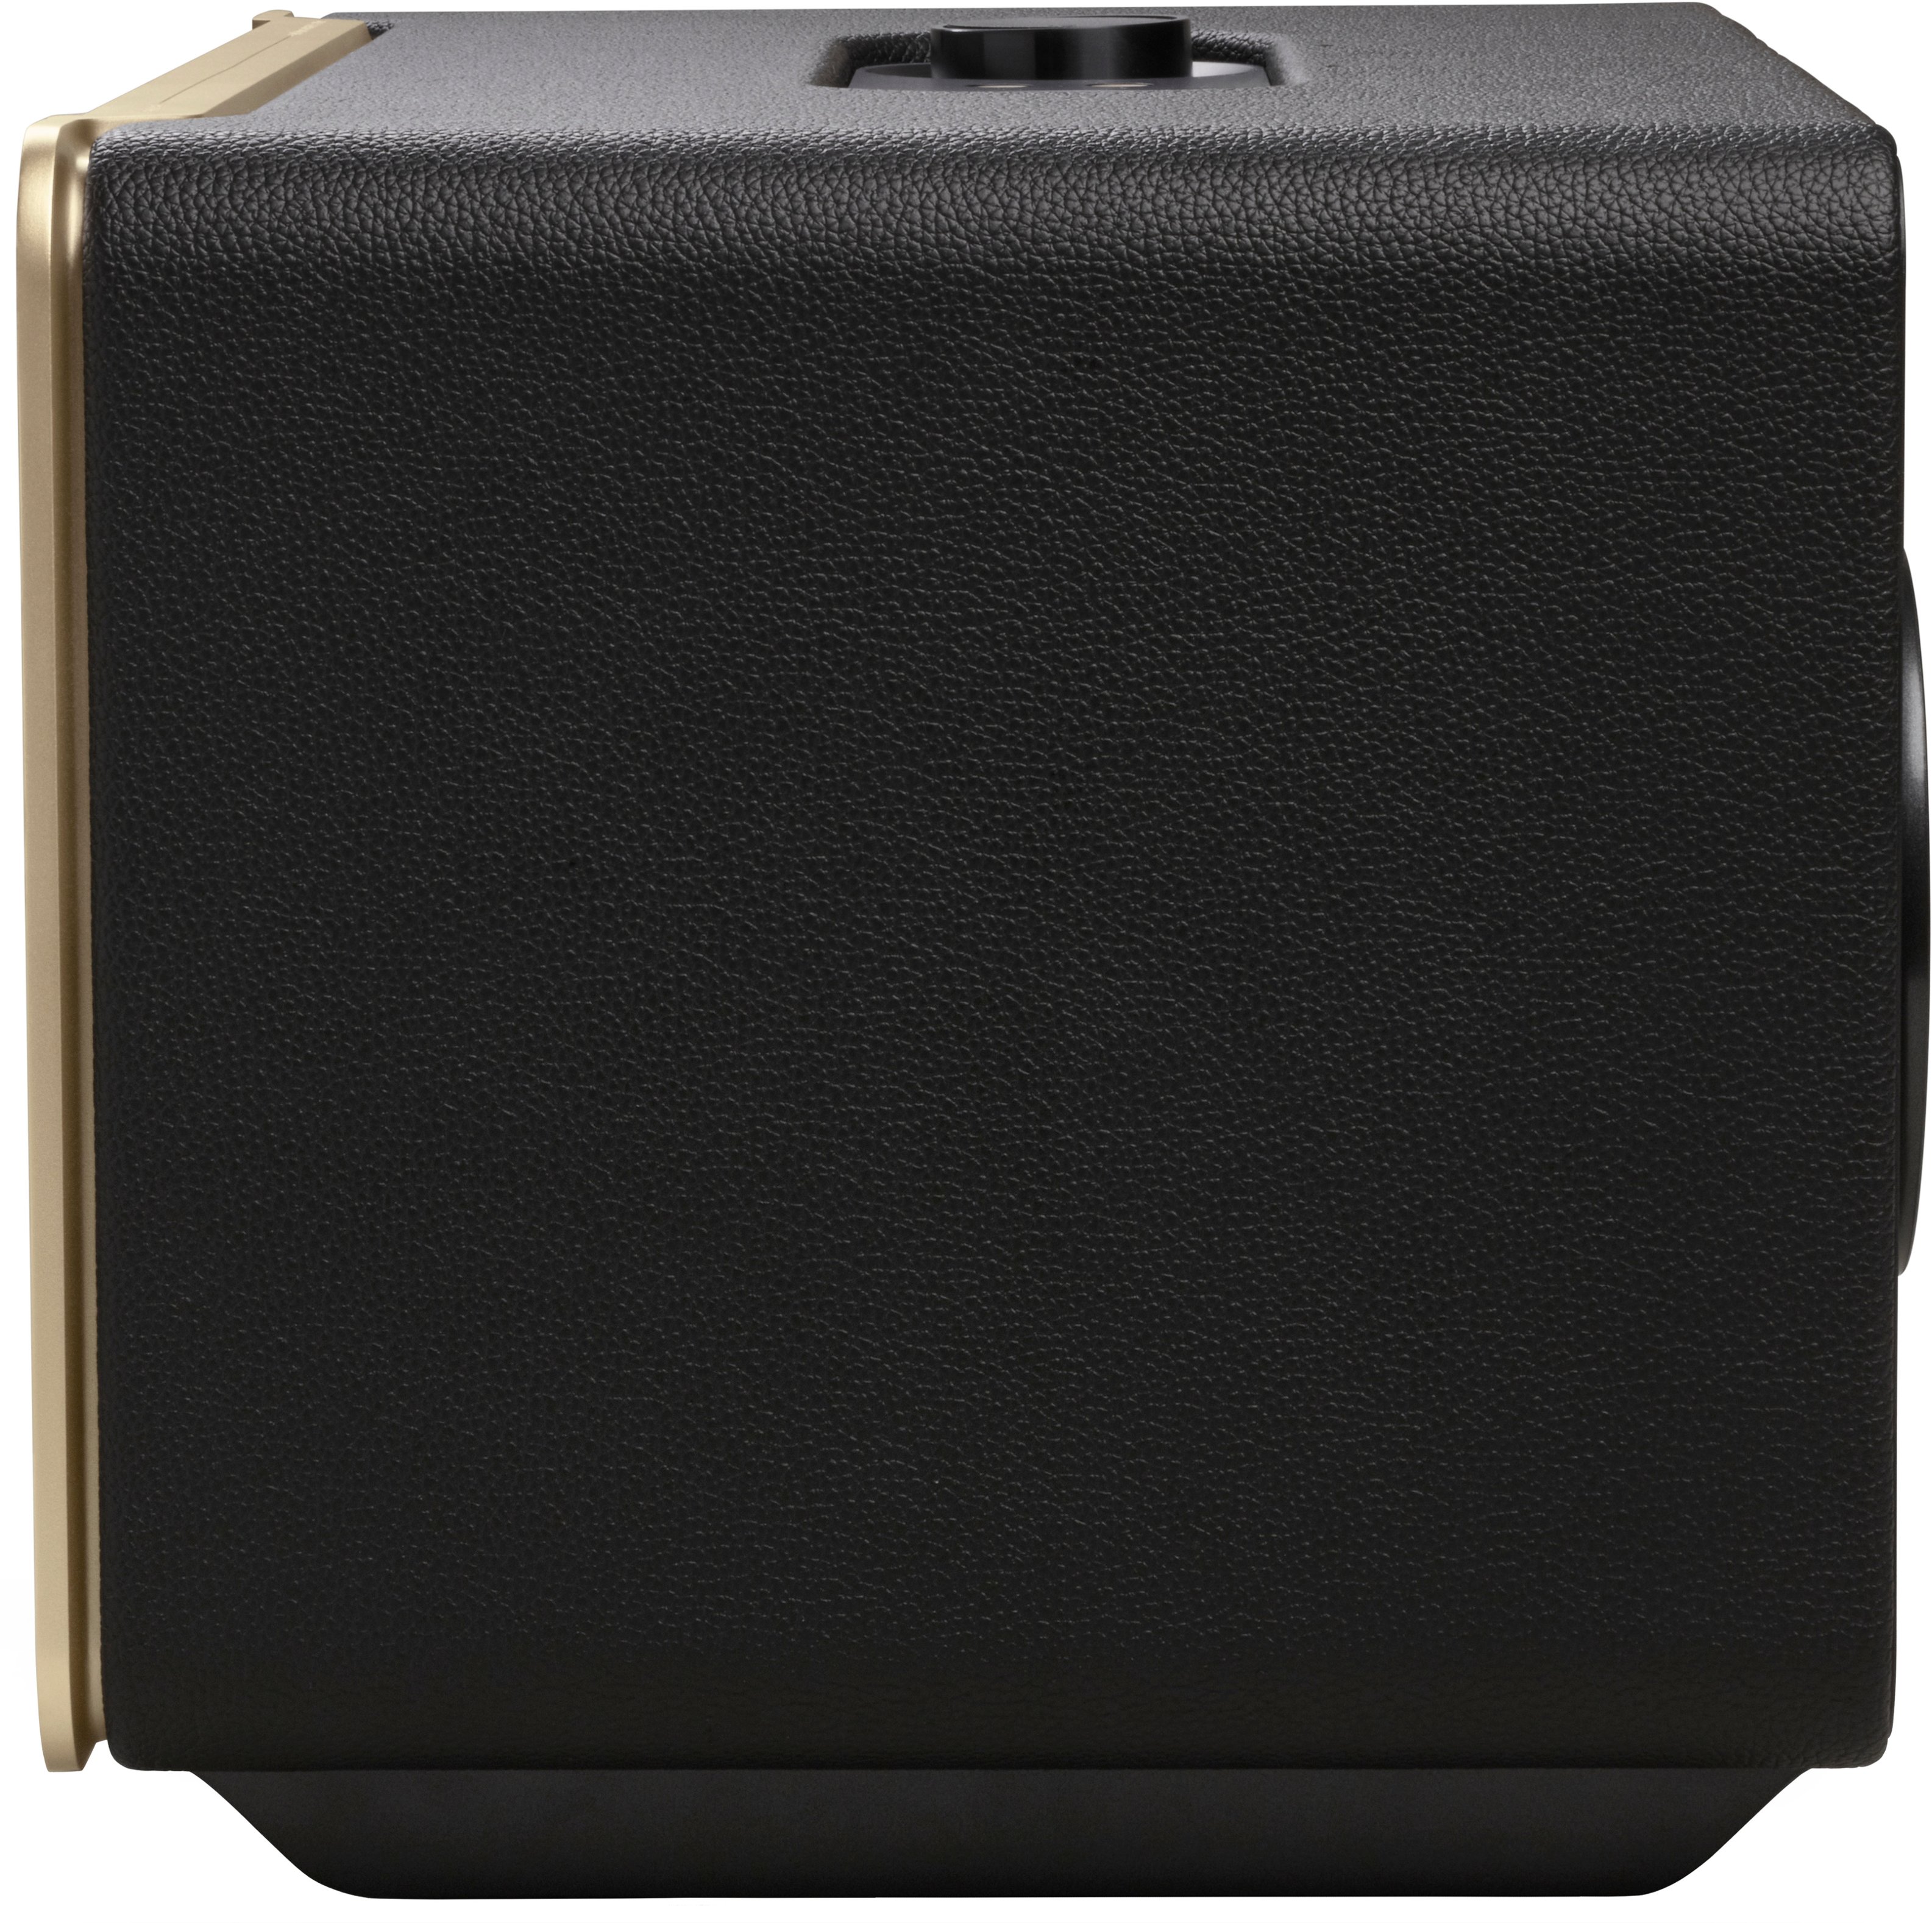 JBL Authentics 500 Smart Home - Speaker Buy JBLAUTH500BLKAM Black Best